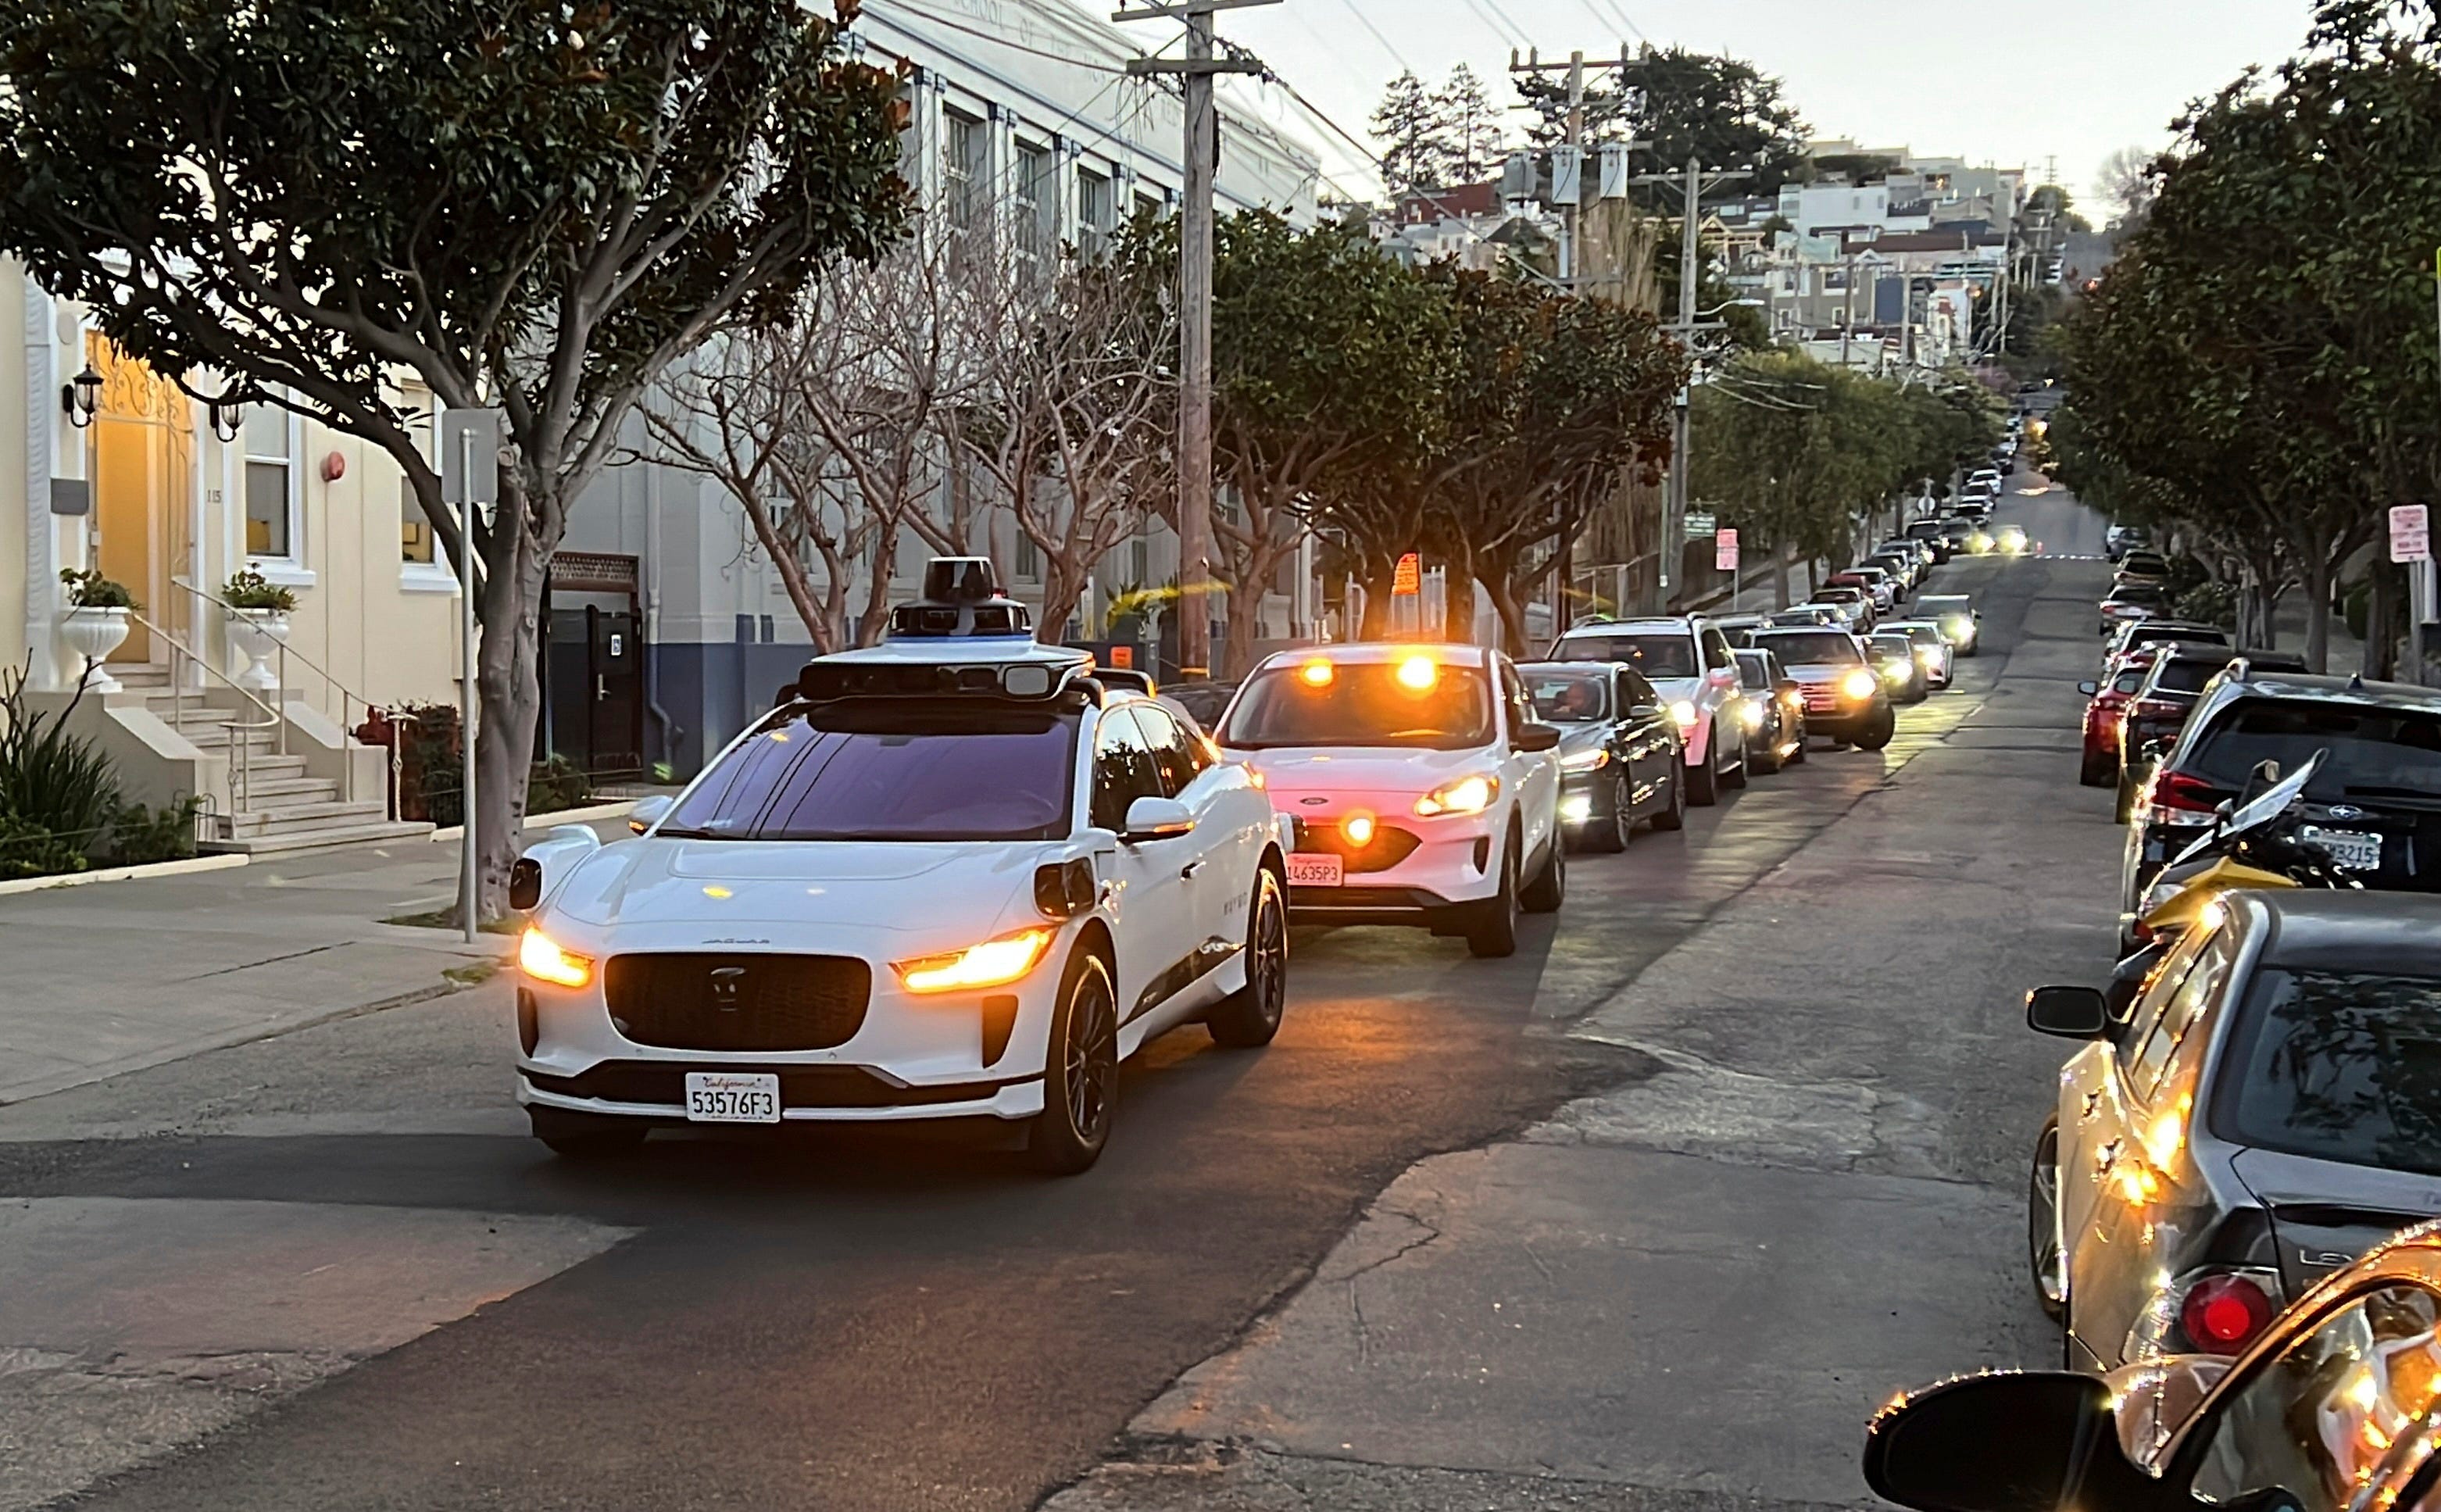 سيارة بيضاء تحجب صفًا من السيارات التي تنتظر خلفها في أحد شوارع المدينة. إنها سيارة أجرة Waymo ذاتية القيادة.